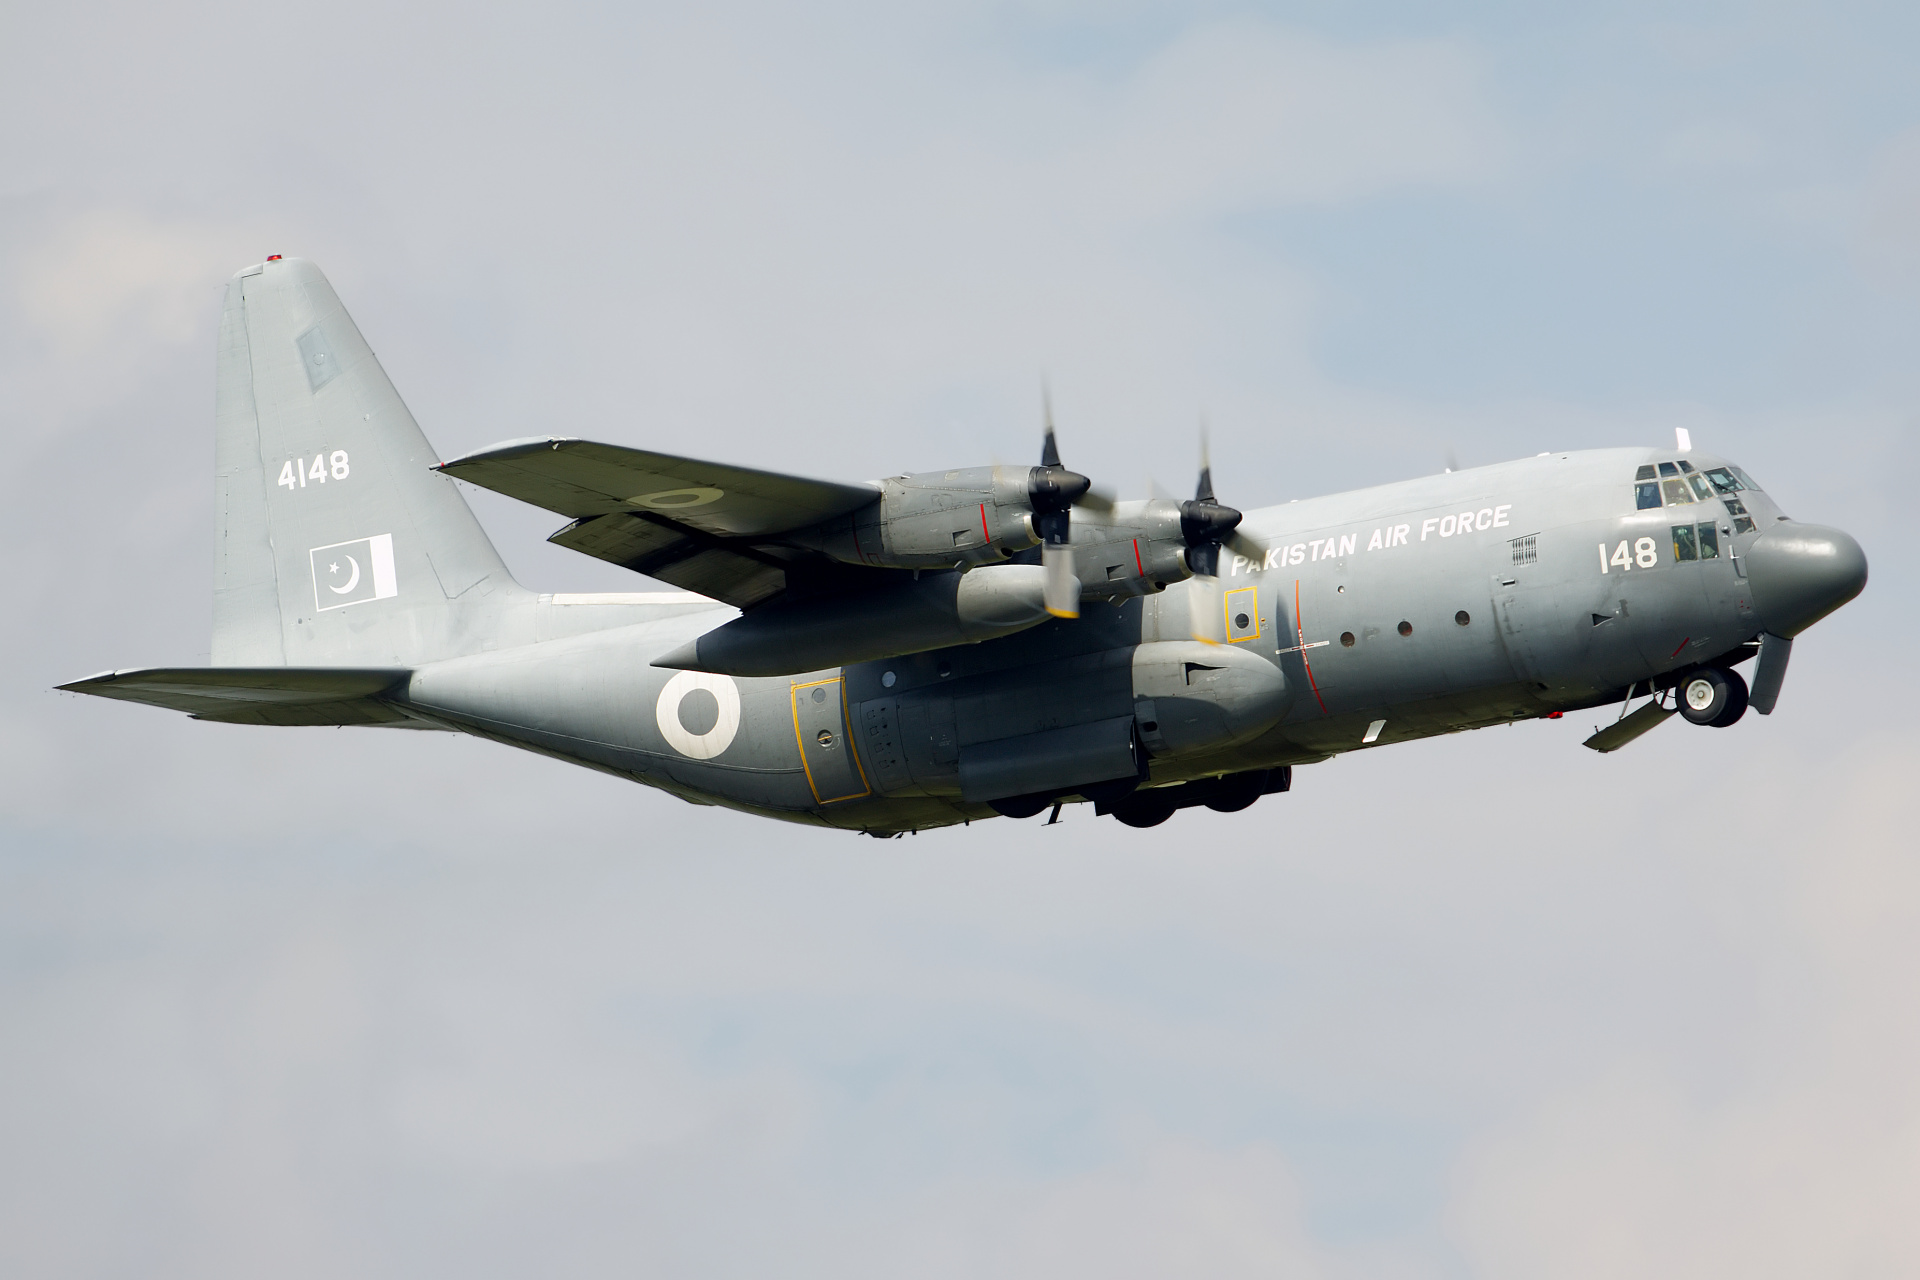 C-130E, 4148, Pakistan Air Force (Aircraft » EPWA Spotting » Lockheed C-130 Hercules)